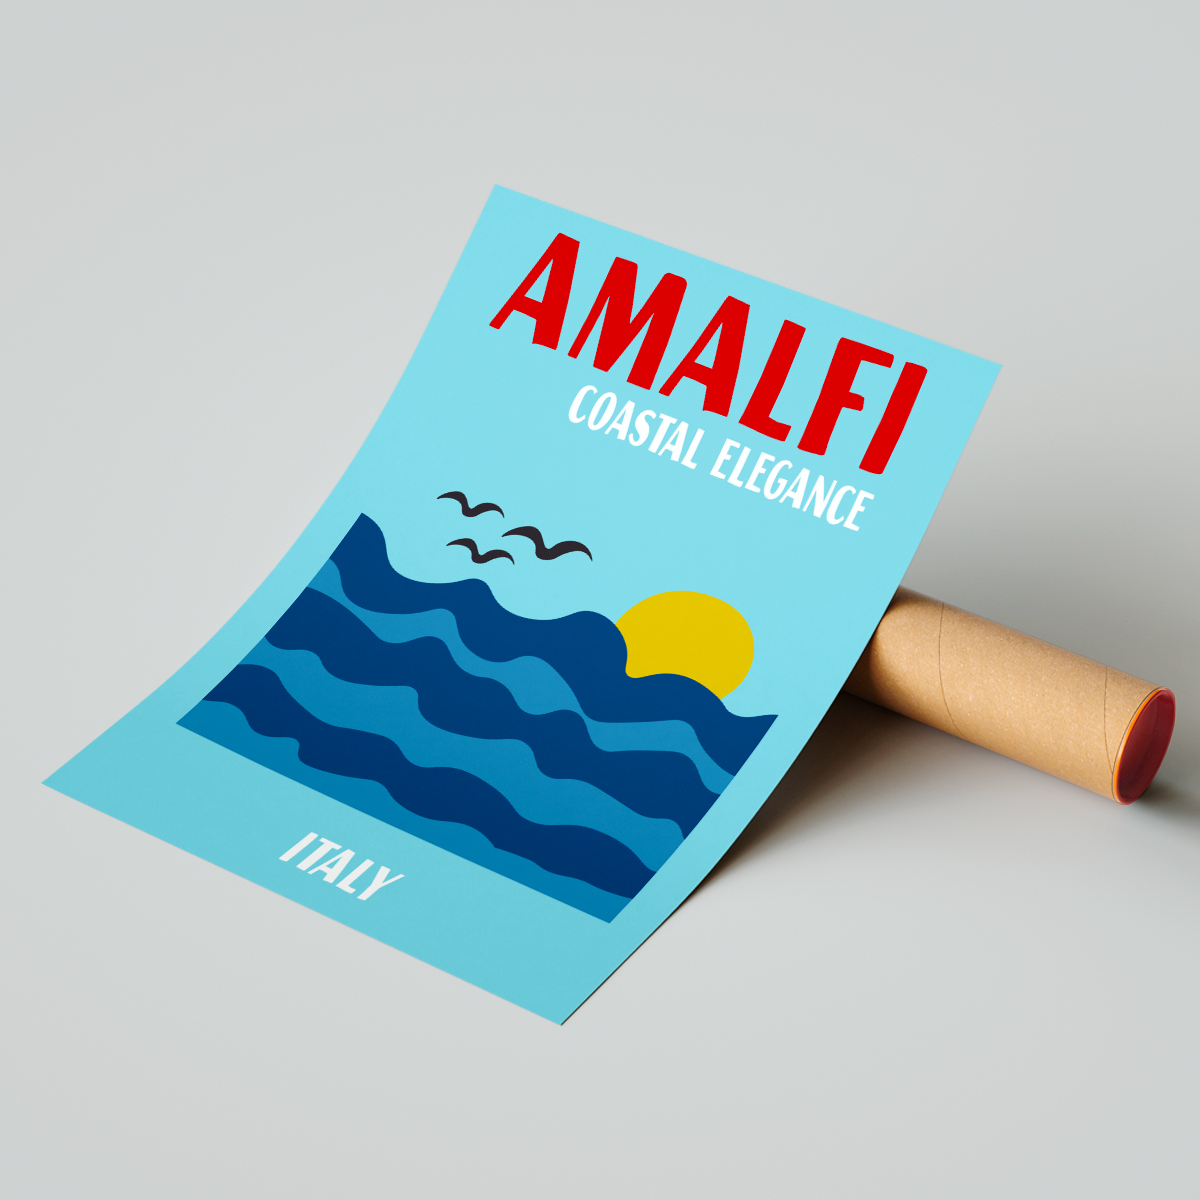 Affiche Amalfi Coast